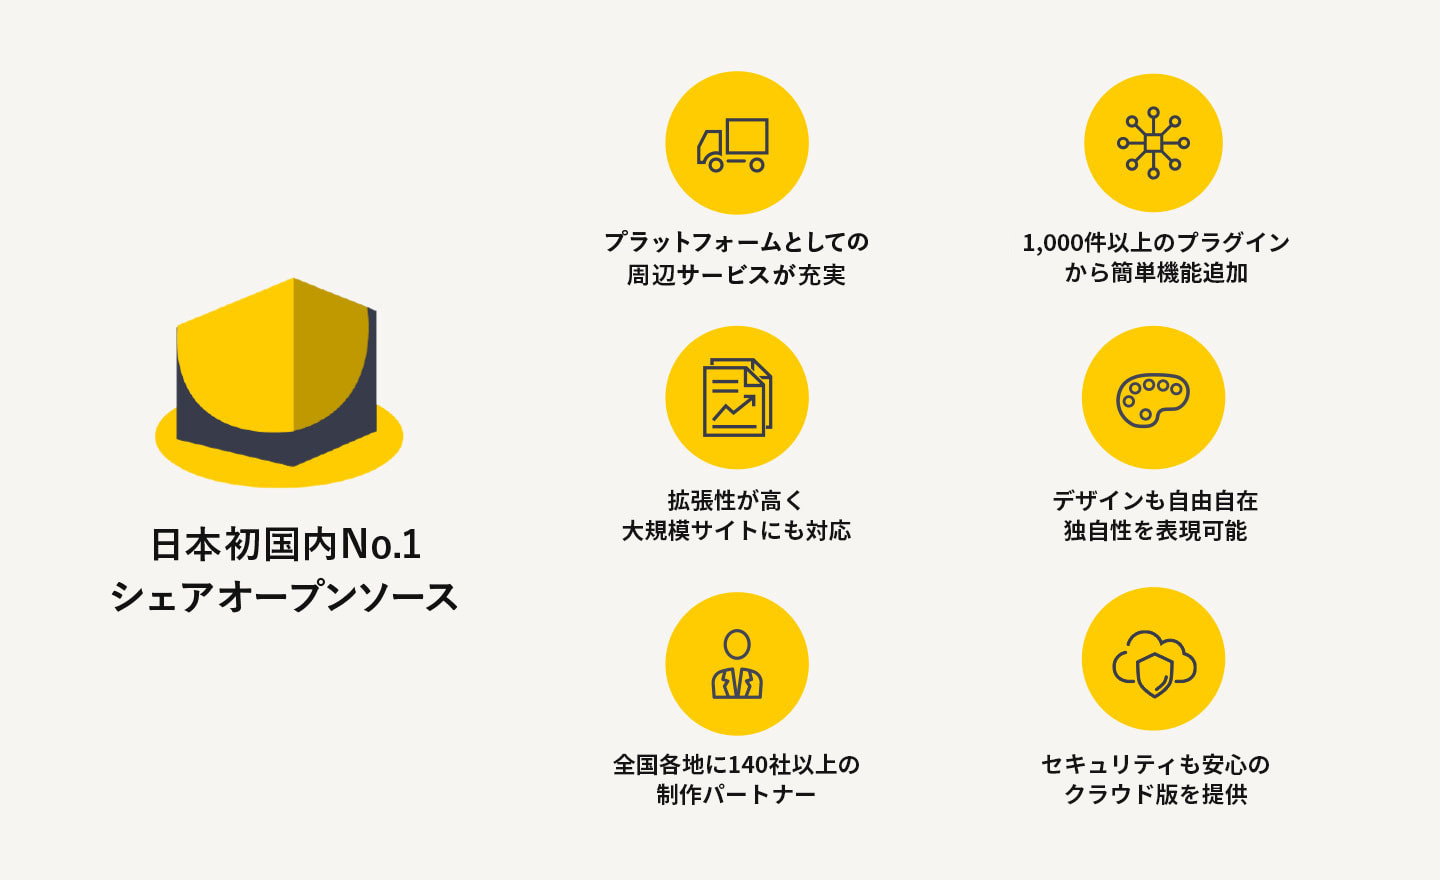 特徴は次の通りです。日本発で国内NO.1シェアオープンソース（※）。プラットフォームとしての周辺サービスが充実。800種類以上のプラグインから簡単機能追加。拡張性が高く大規模サイトにも対応。デザインも自由自在で独自性を表現可能。全国各地に100社以上の制作パートナー。企業間取引専用のECサイト構築パッケージ。